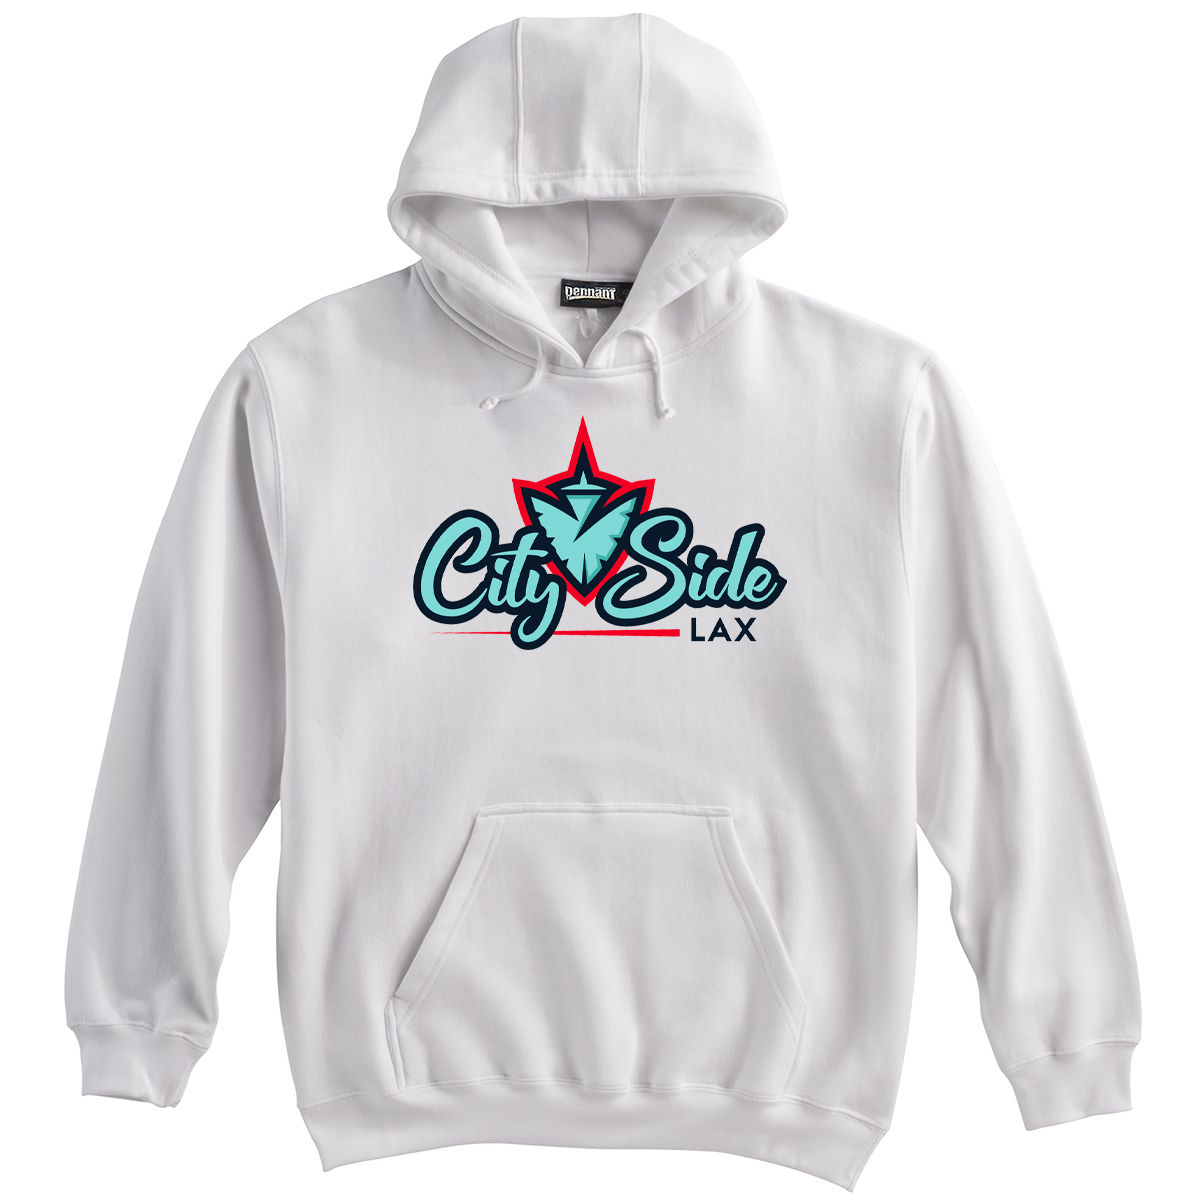 CitySide Lacrosse Sweatshirt